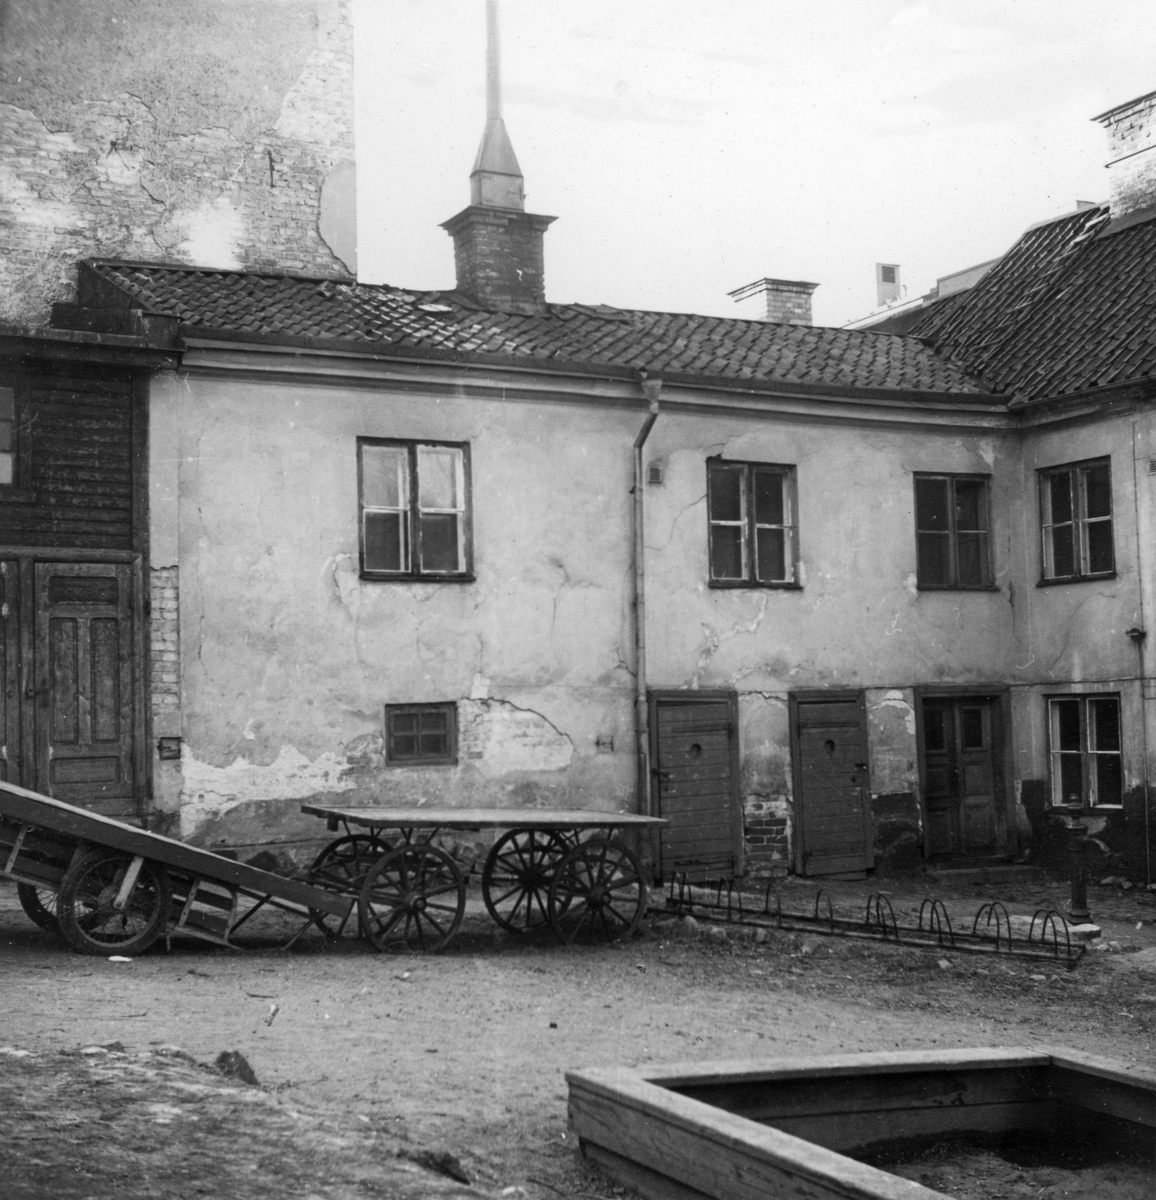 Byggnaderna längs Trädgårdsgatan inom kvarteret Danzig utgjorde ett sammanhängande och karakteristiskt gatuparti där de äldsta husen torde härstammat från 1830-talet. Dessa gatumiljöer kom mestadels att försvinna från stadsbilden i samband med saneringen av centrala Norrköping i mitten av 1900-talet. Bilderna är tagna i samband med rivningsansökan 1955. Vy mot nordväst.